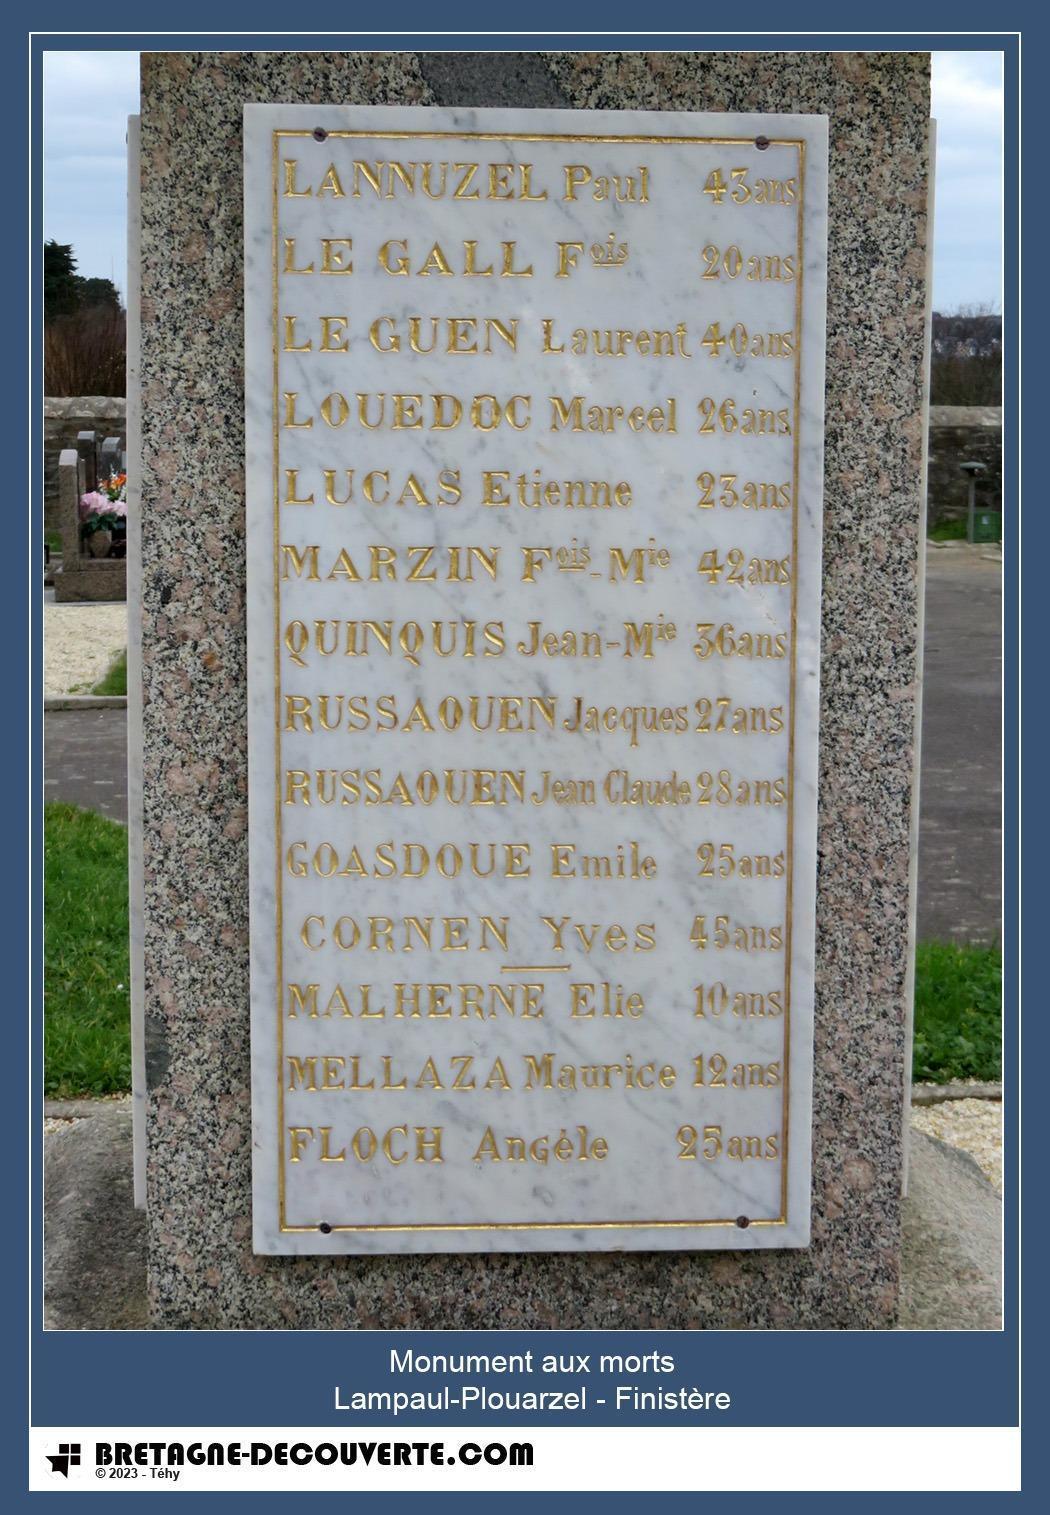 Les noms gravés sur le monument aux morts de Lampaul-Plouarzel